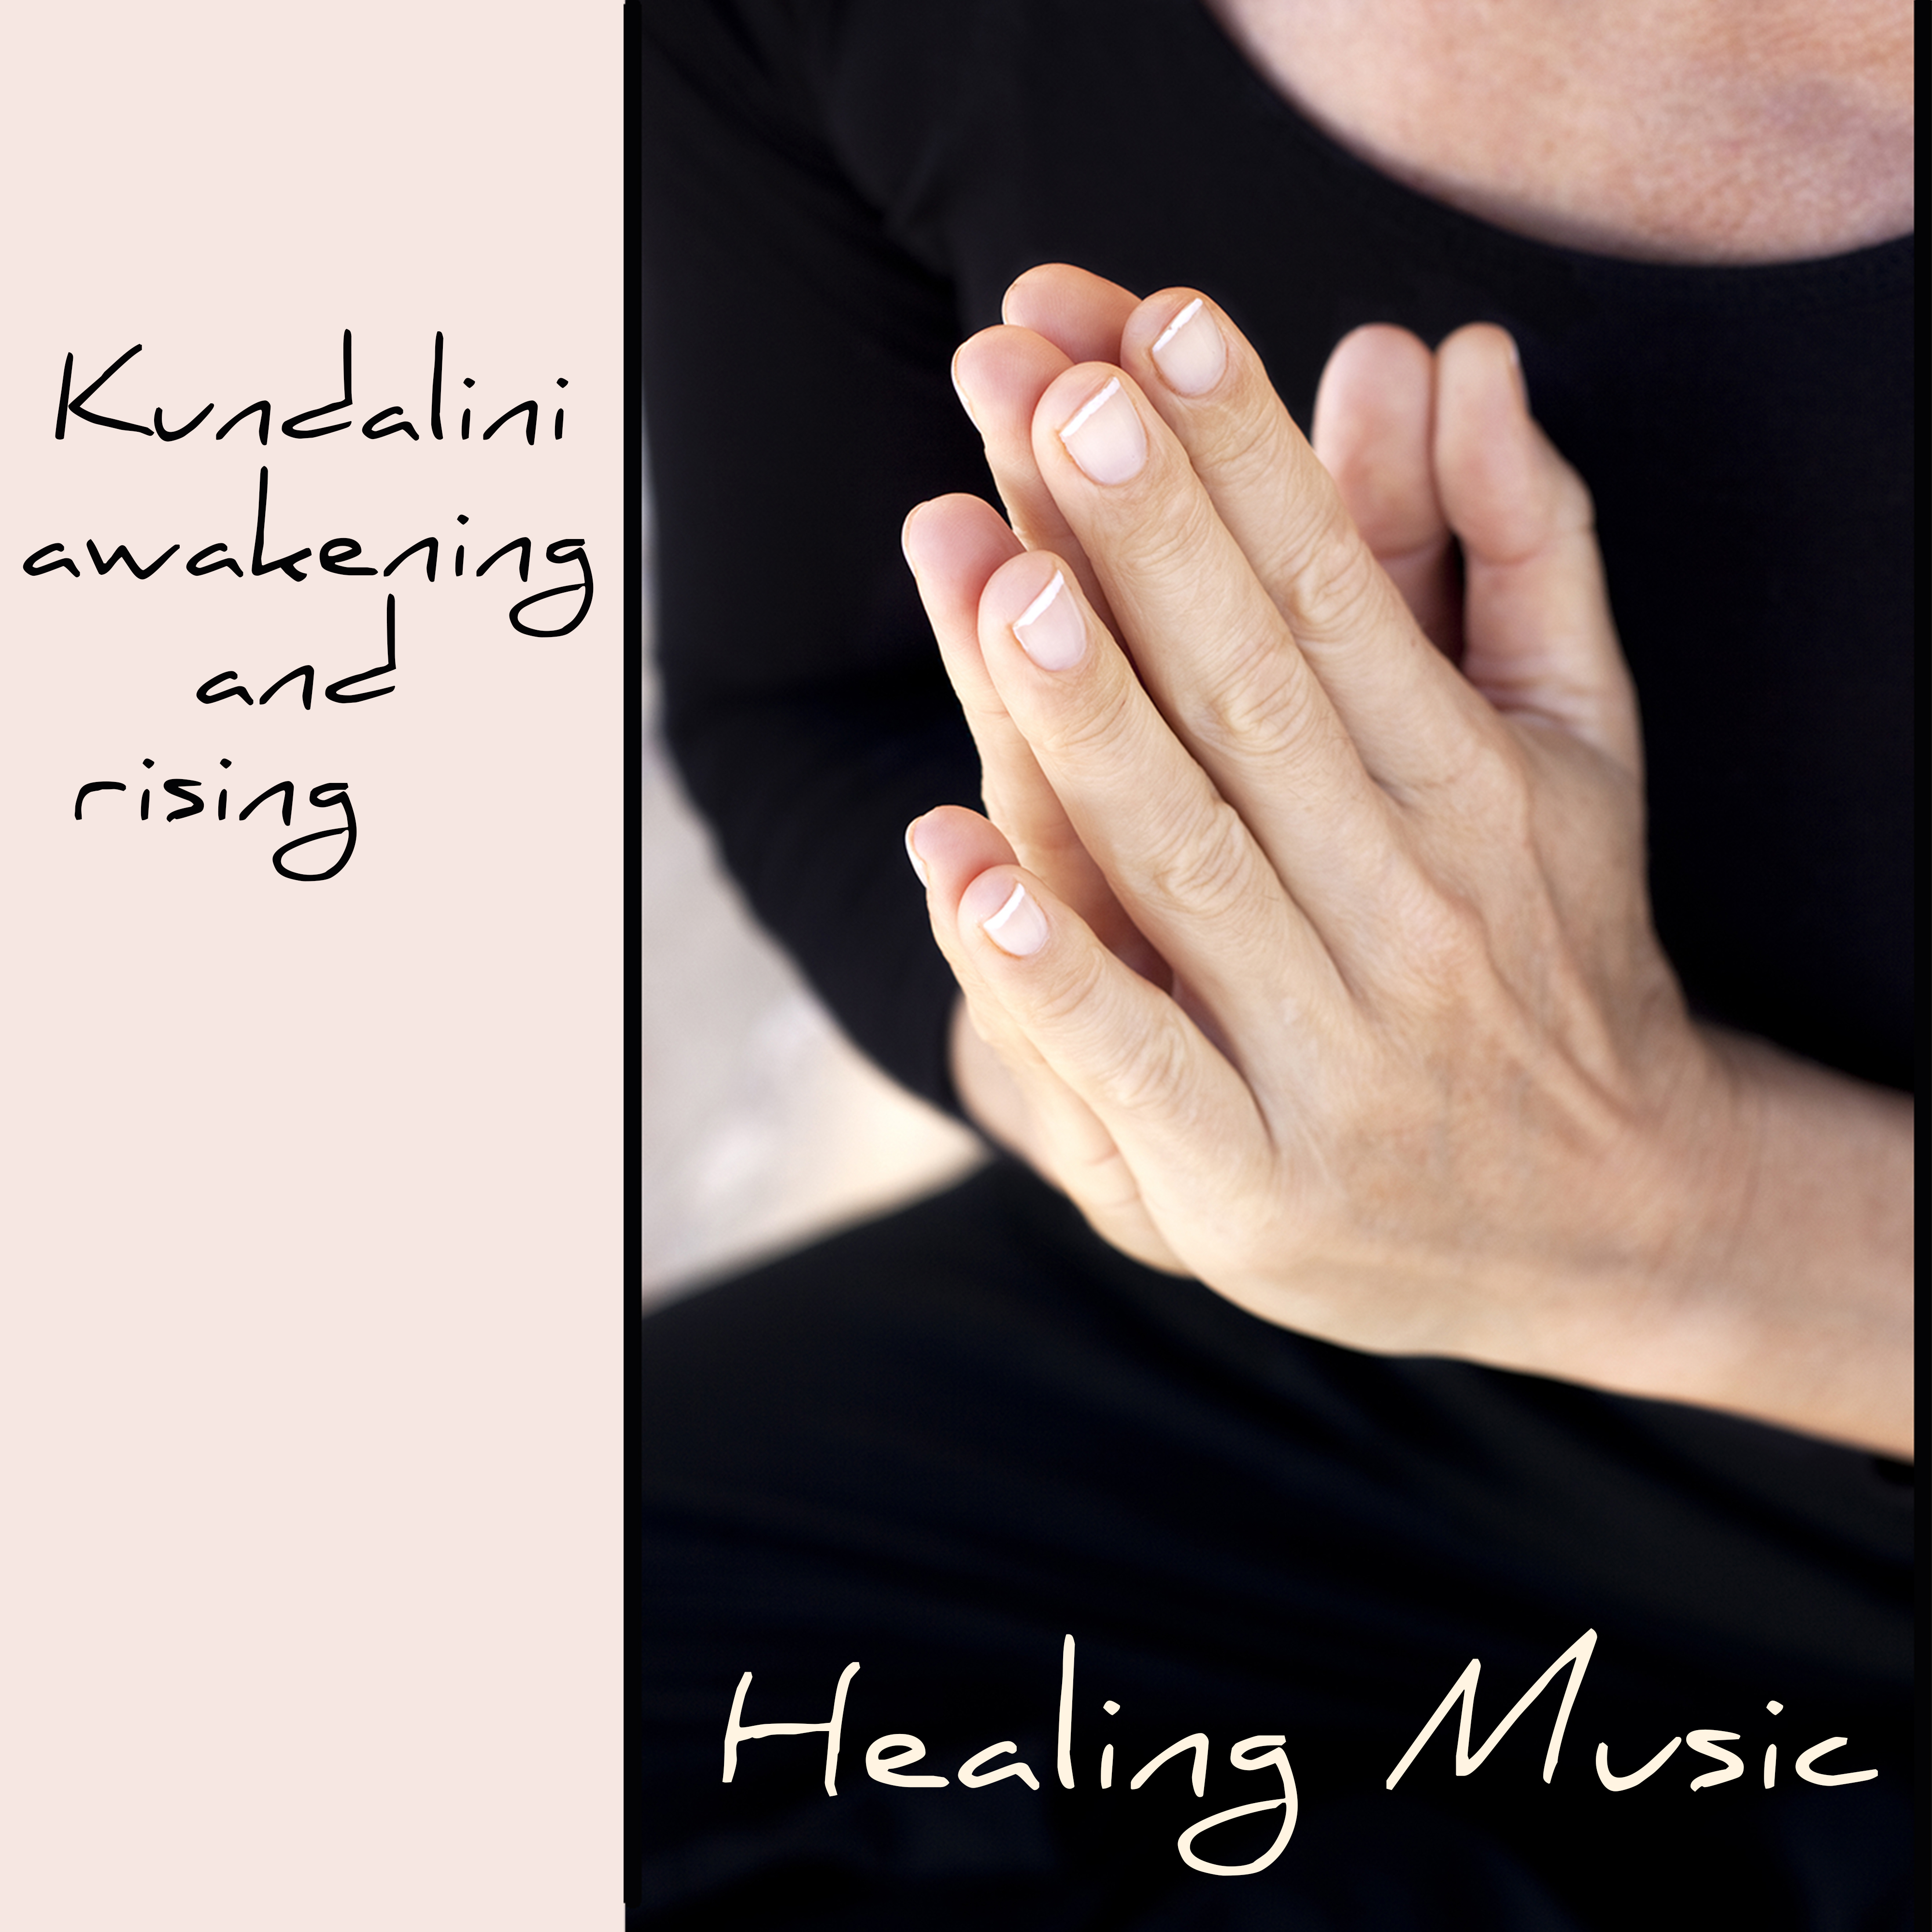 Kundalini Awakening and Rising Healing Music – Kundalini Meditation Powerful Songs